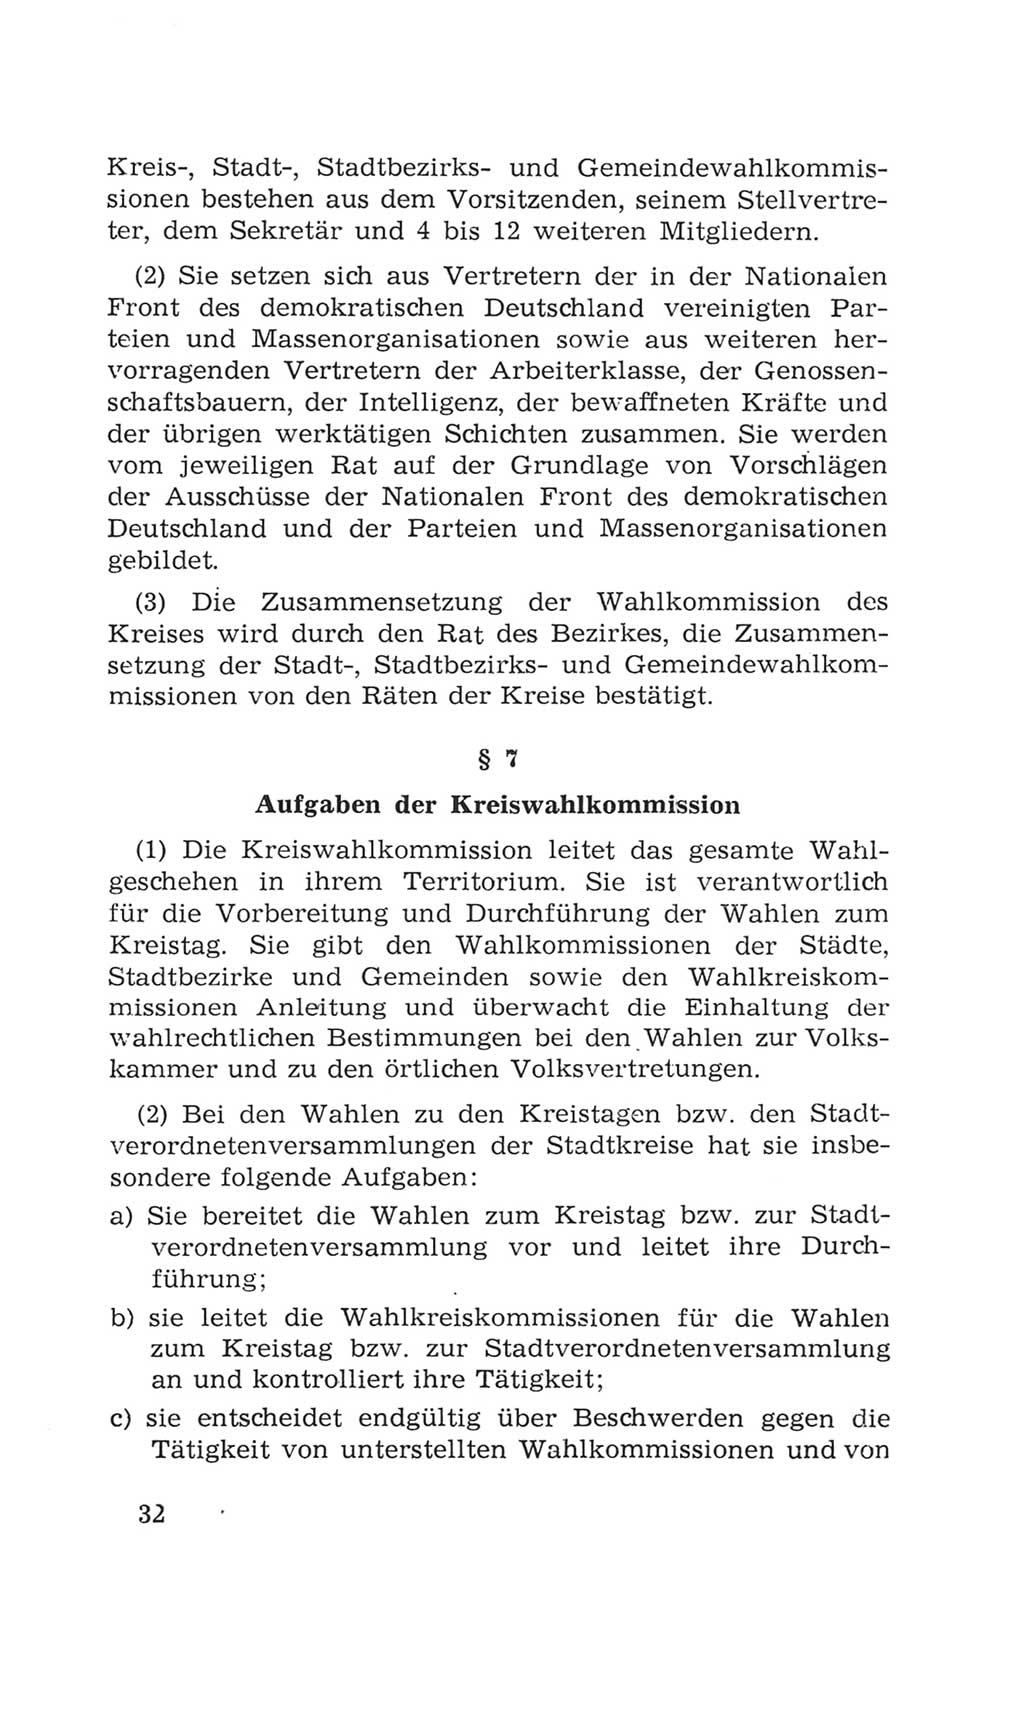 Volkskammer (VK) der Deutschen Demokratischen Republik (DDR), 4. Wahlperiode 1963-1967, Seite 32 (VK. DDR 4. WP. 1963-1967, S. 32)